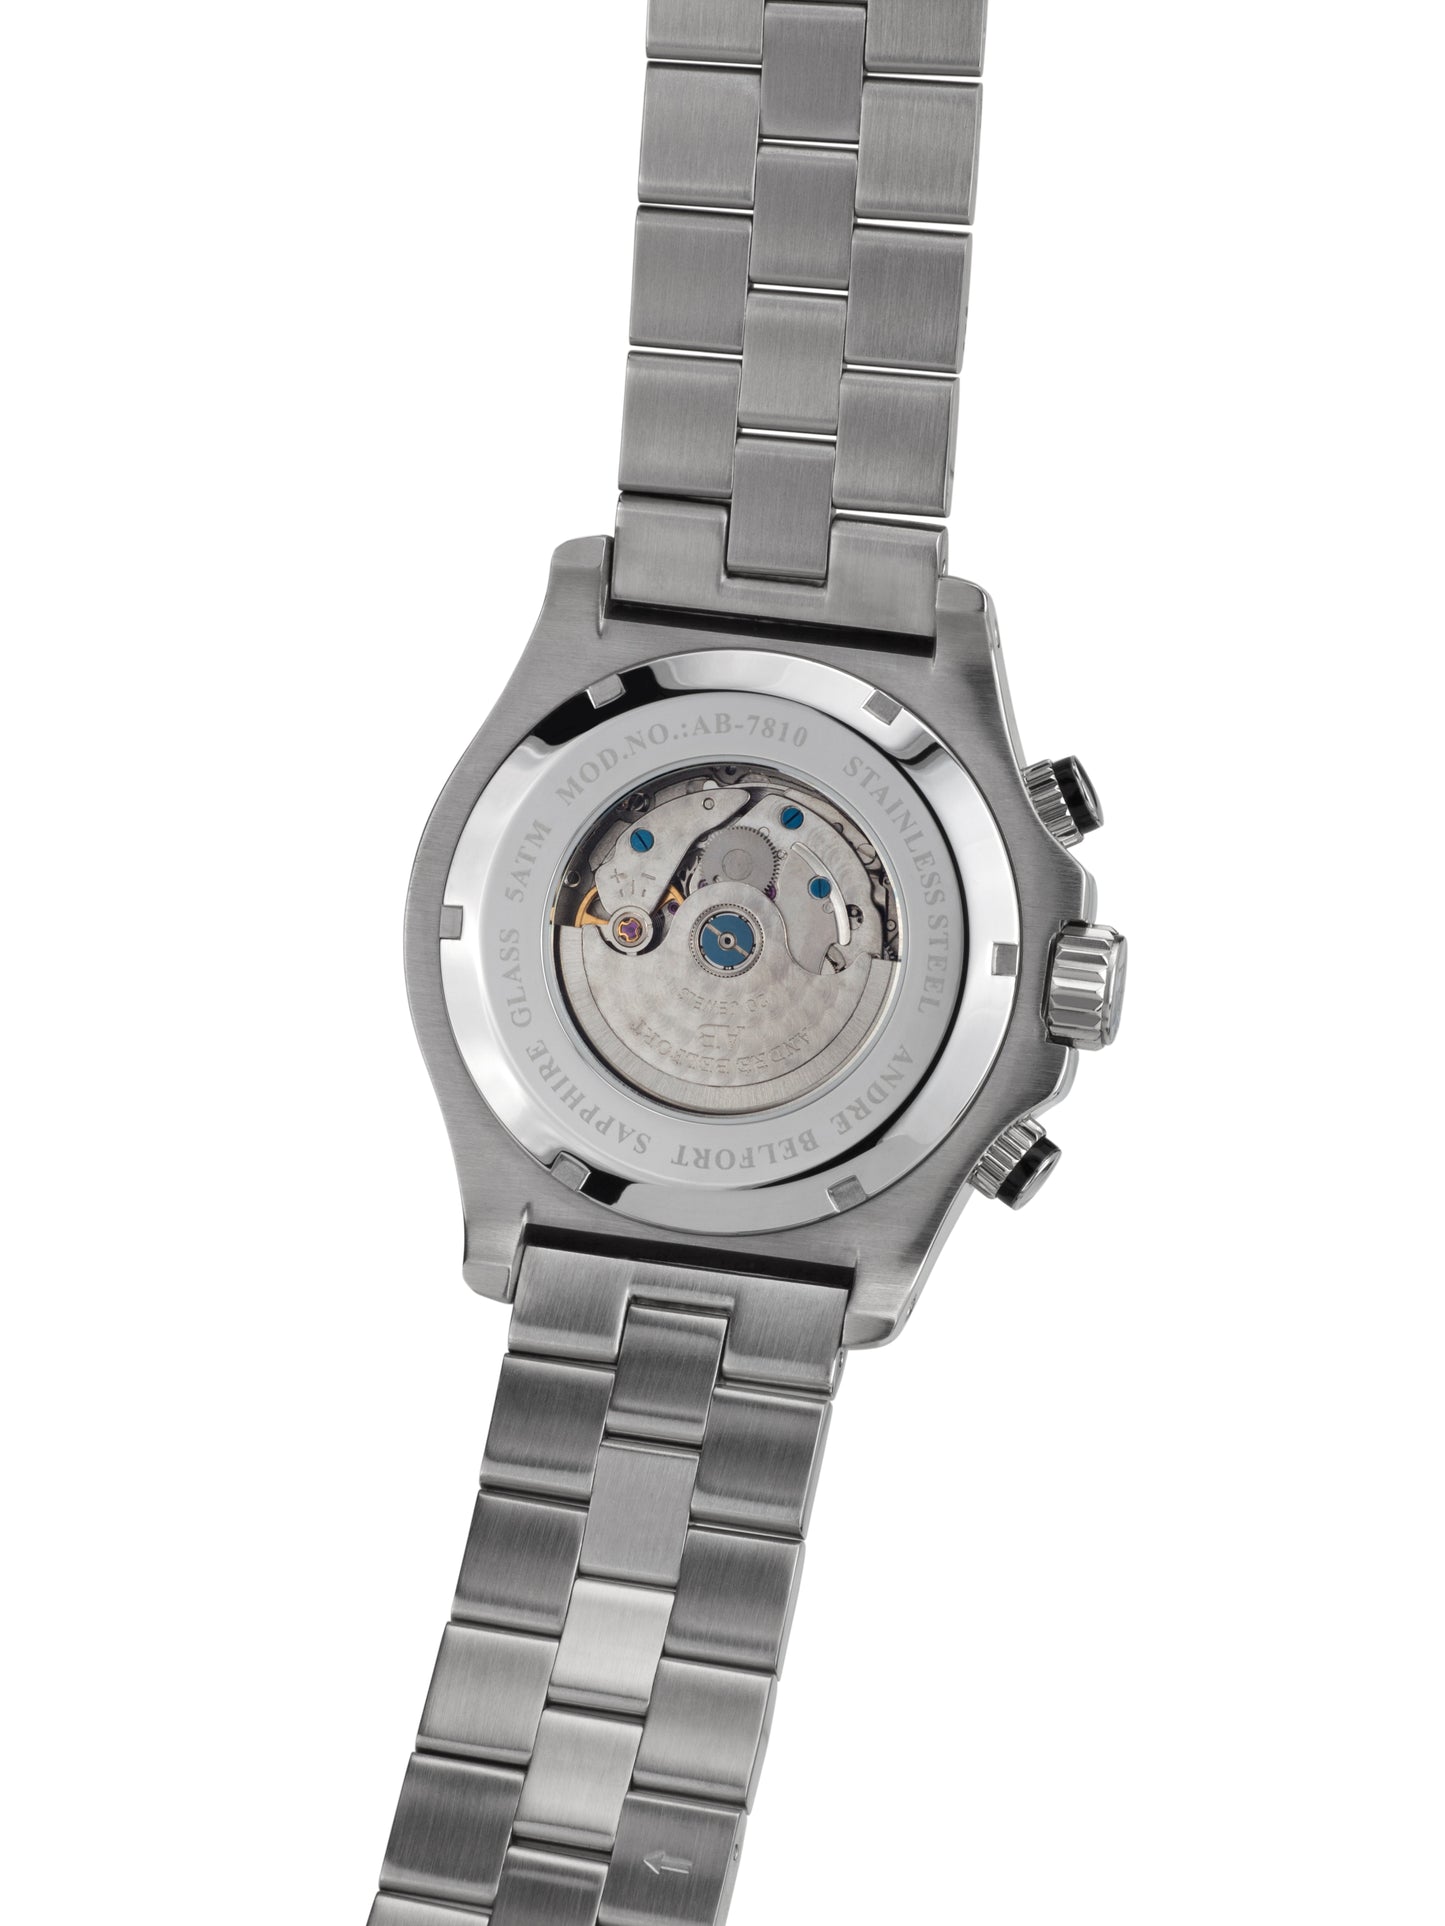 Automatic watches — Le Commandant — André Belfort — steel blue